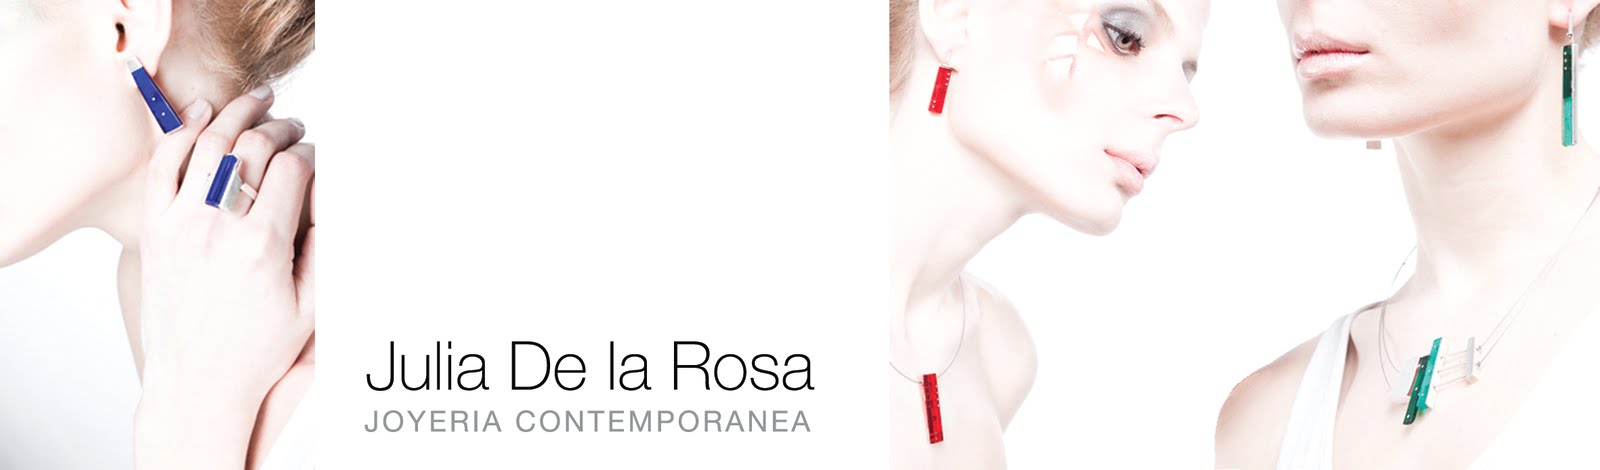 Julia De la Rosa - Joyería contemporánea